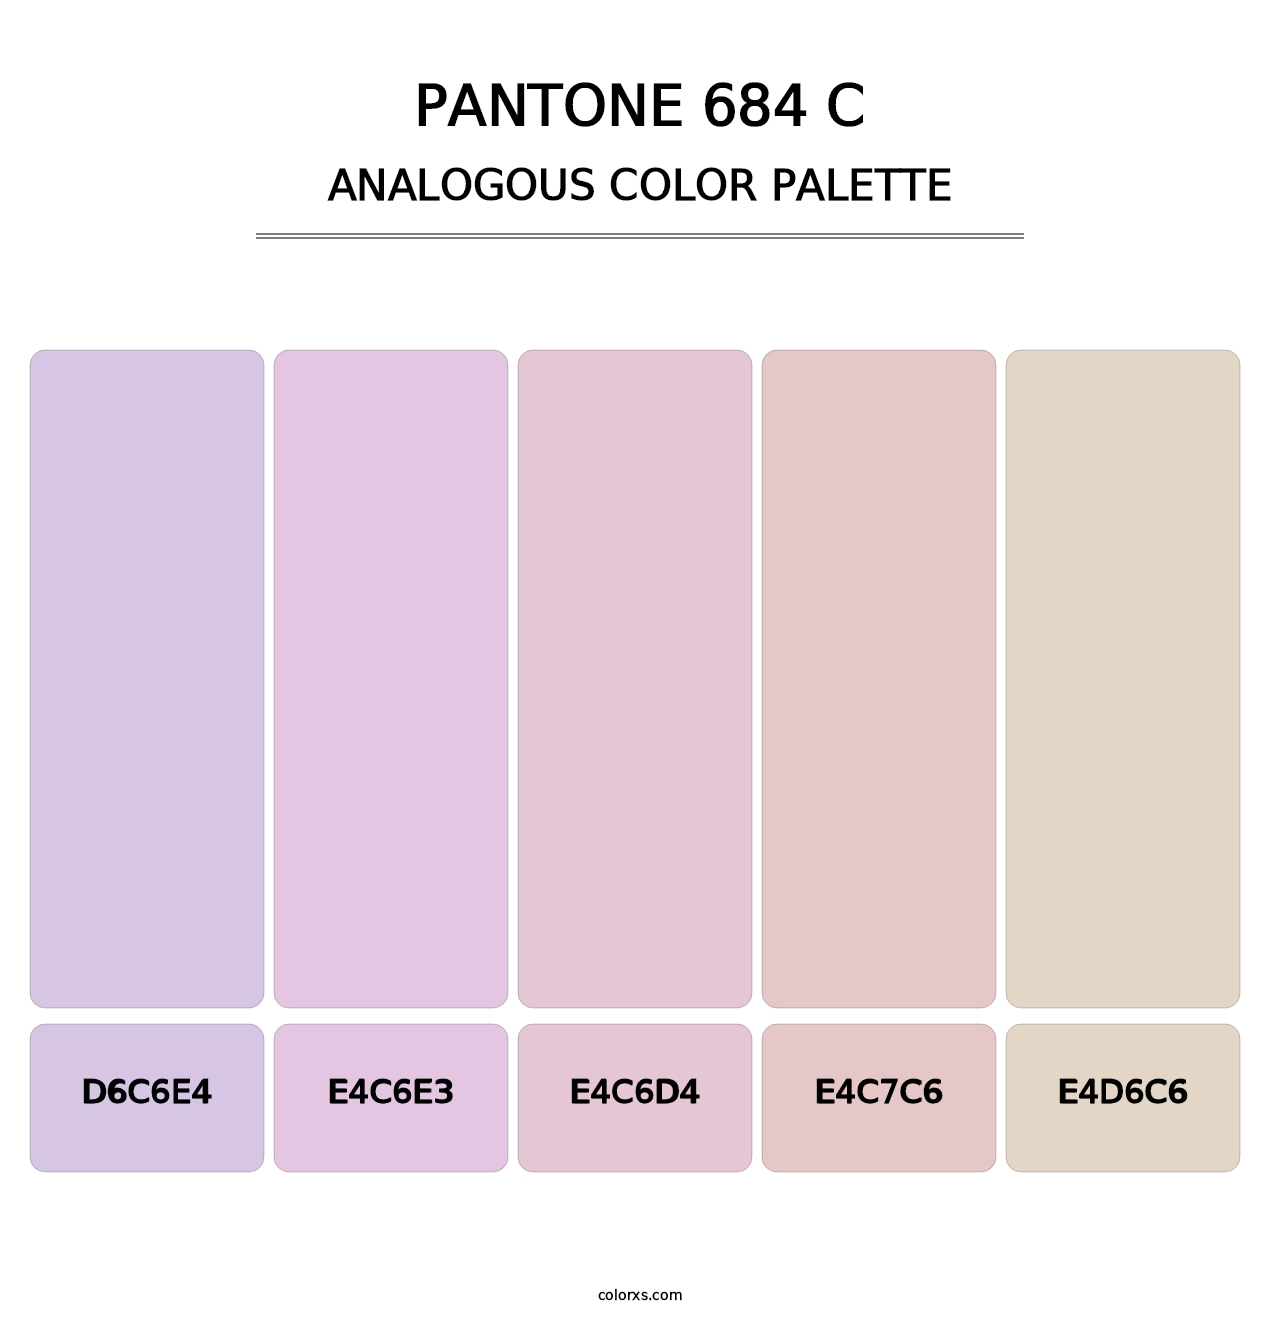 PANTONE 684 C - Analogous Color Palette